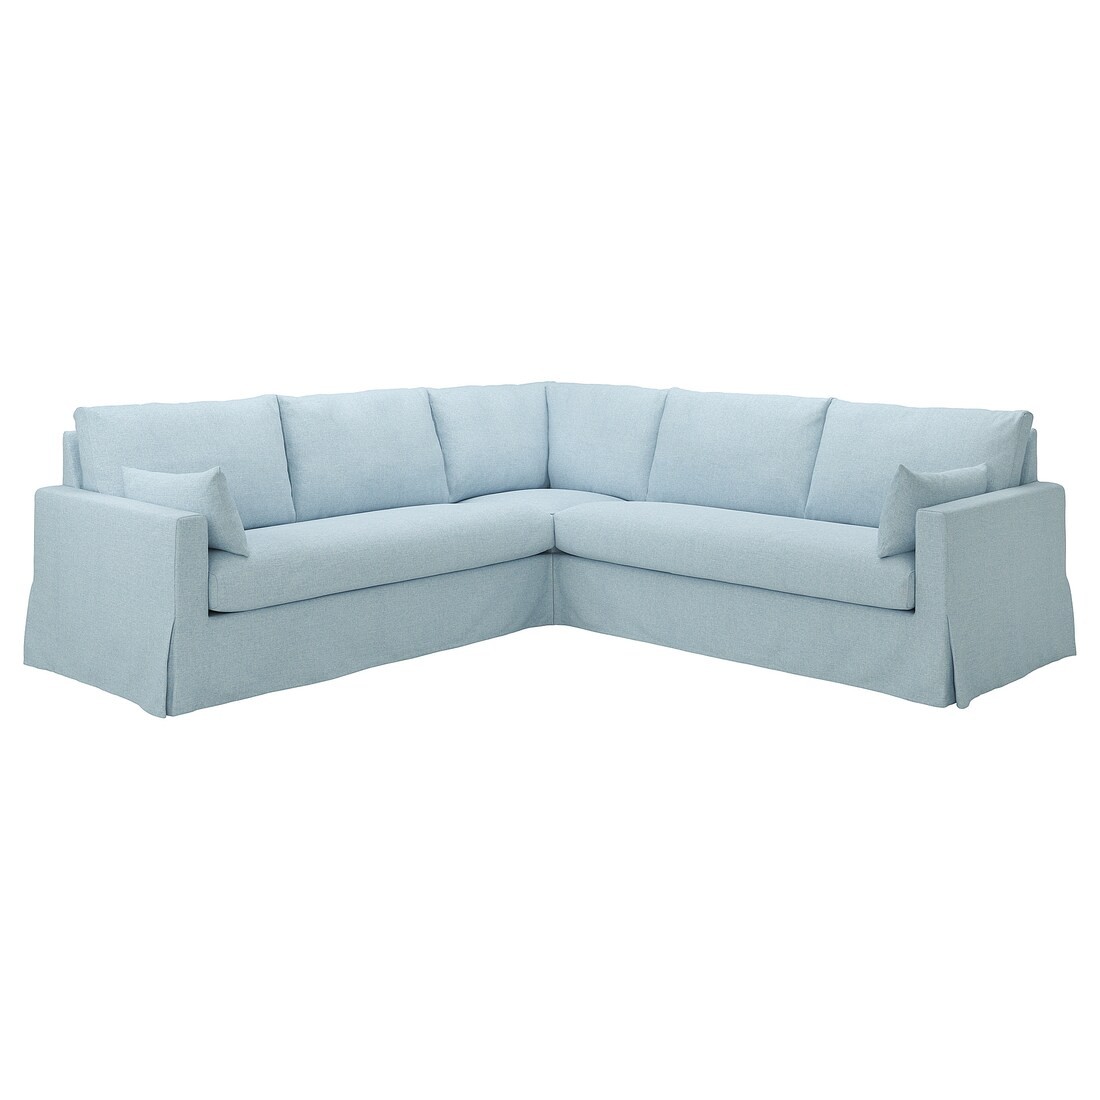 HYLTARP 4-местный угловой диван, Киланда бледно-голубой